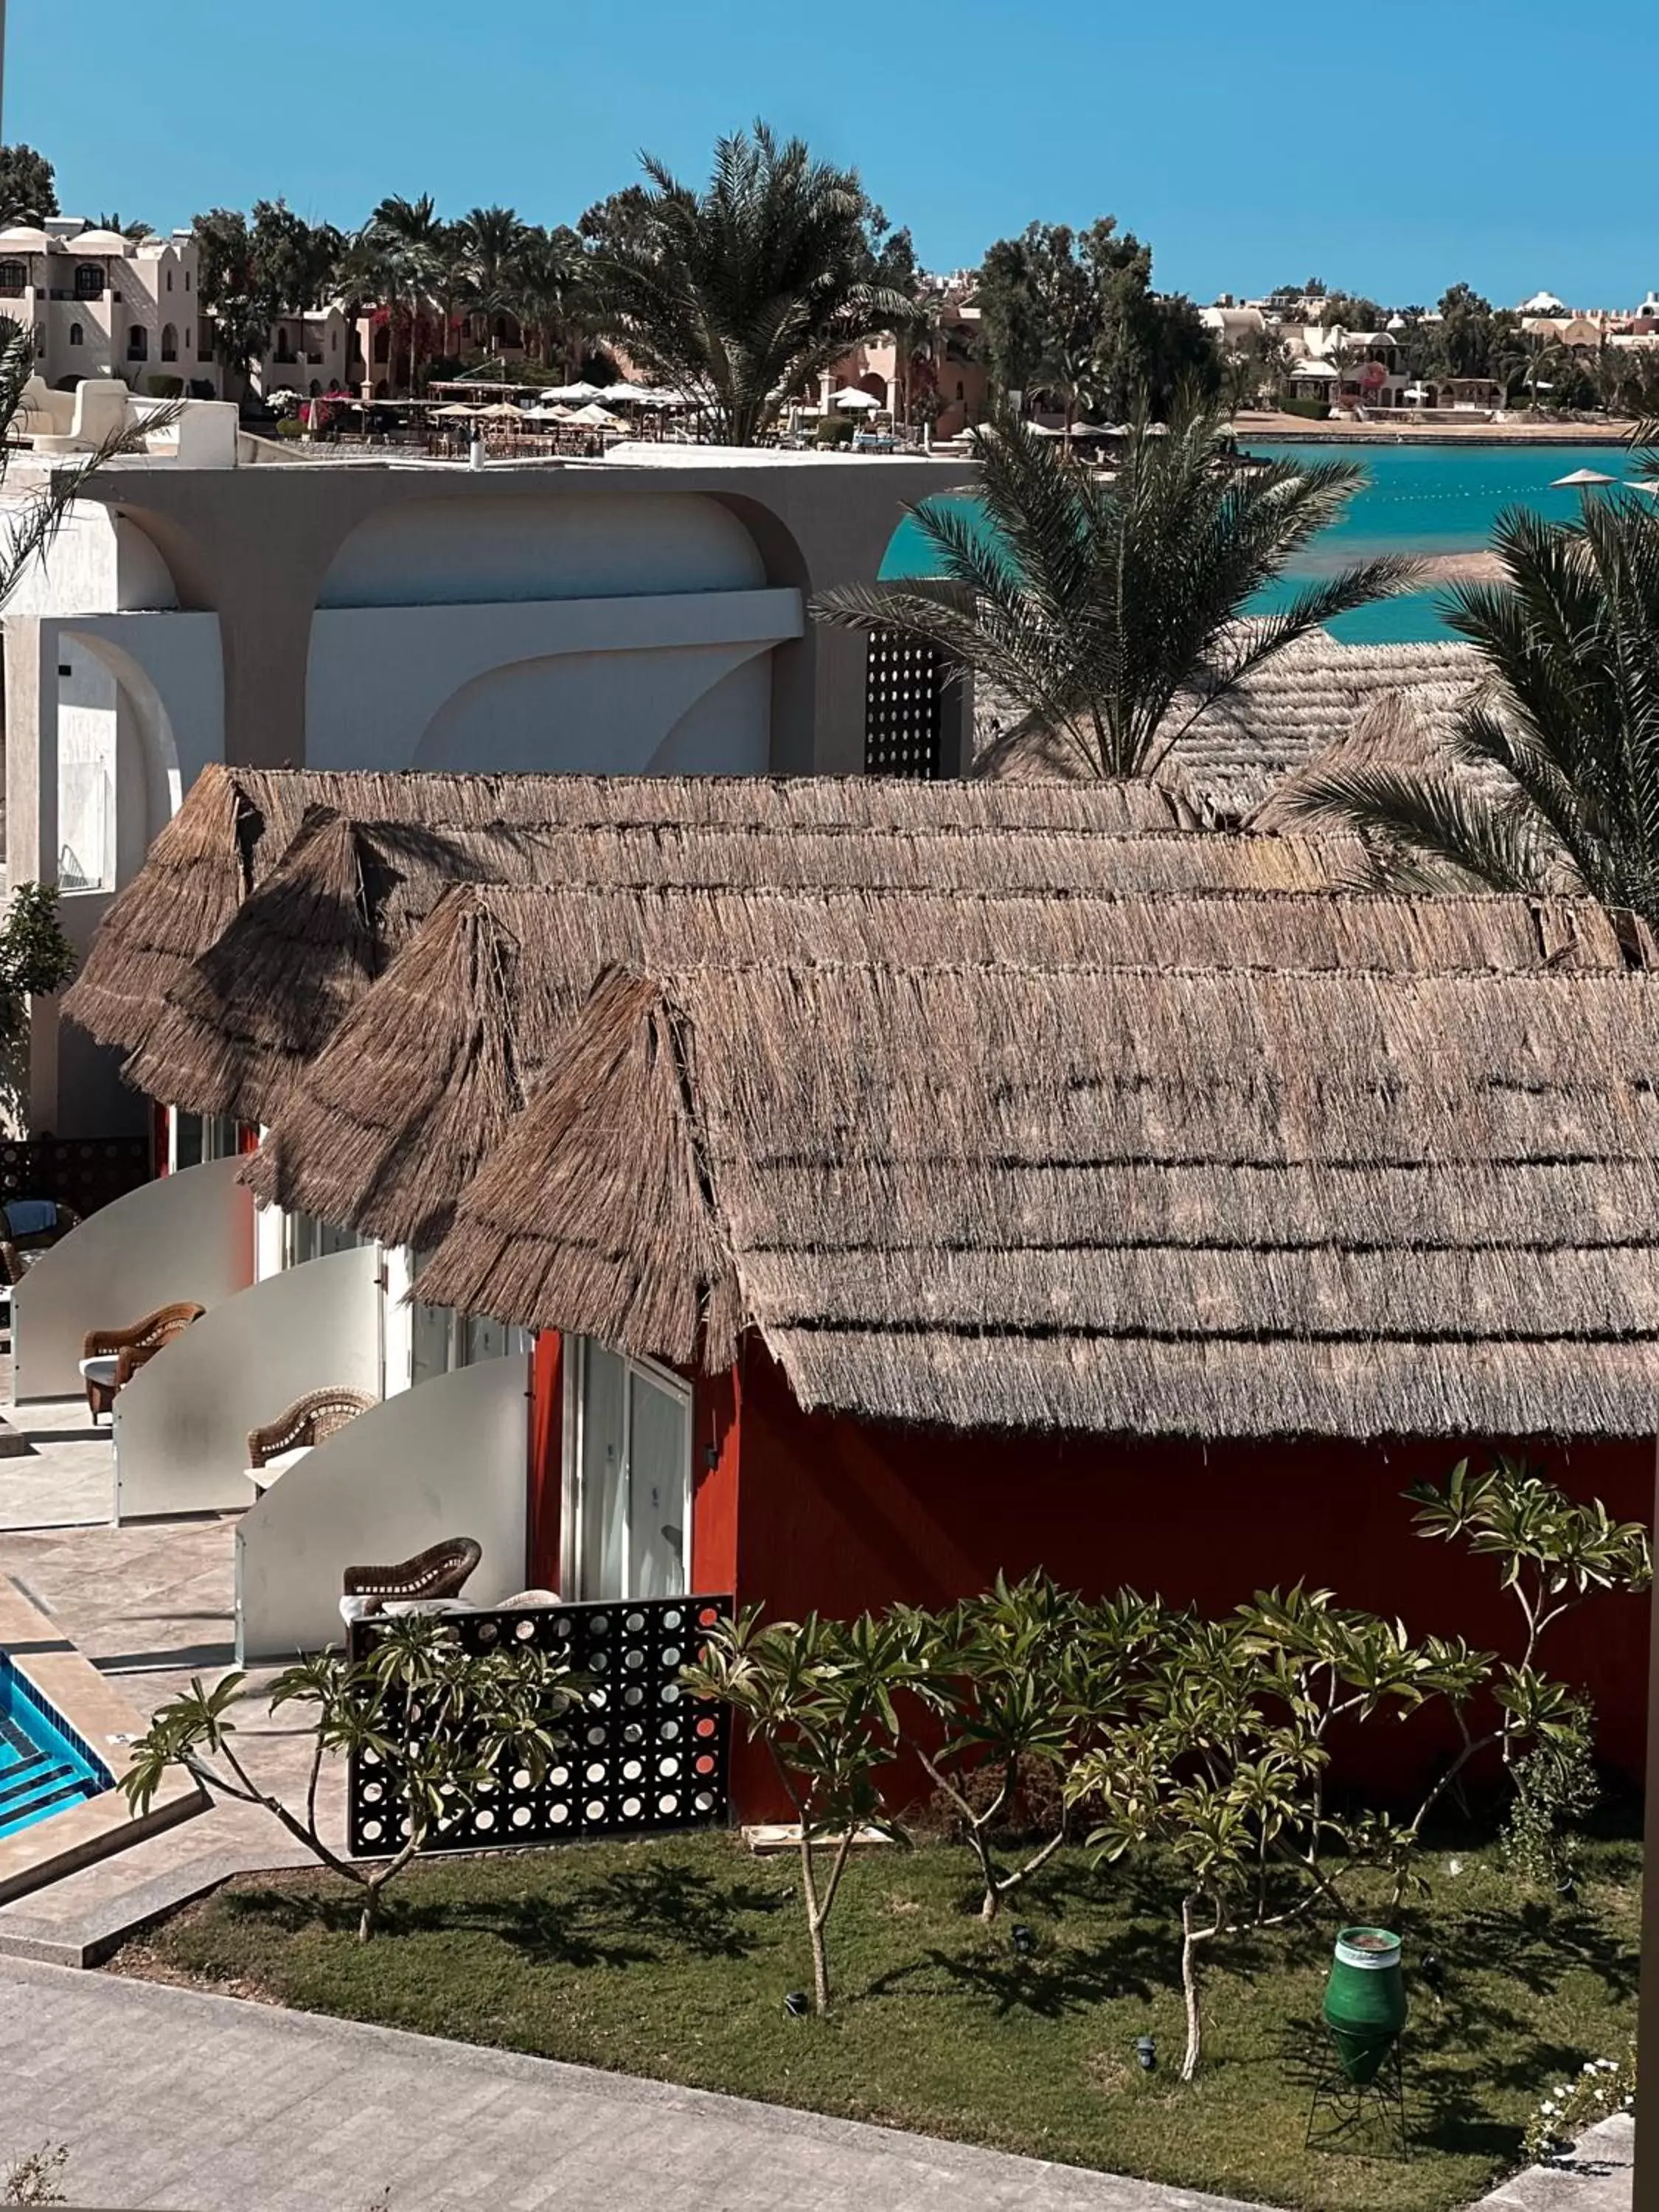 Property Building in Panorama Bungalows Resort El Gouna